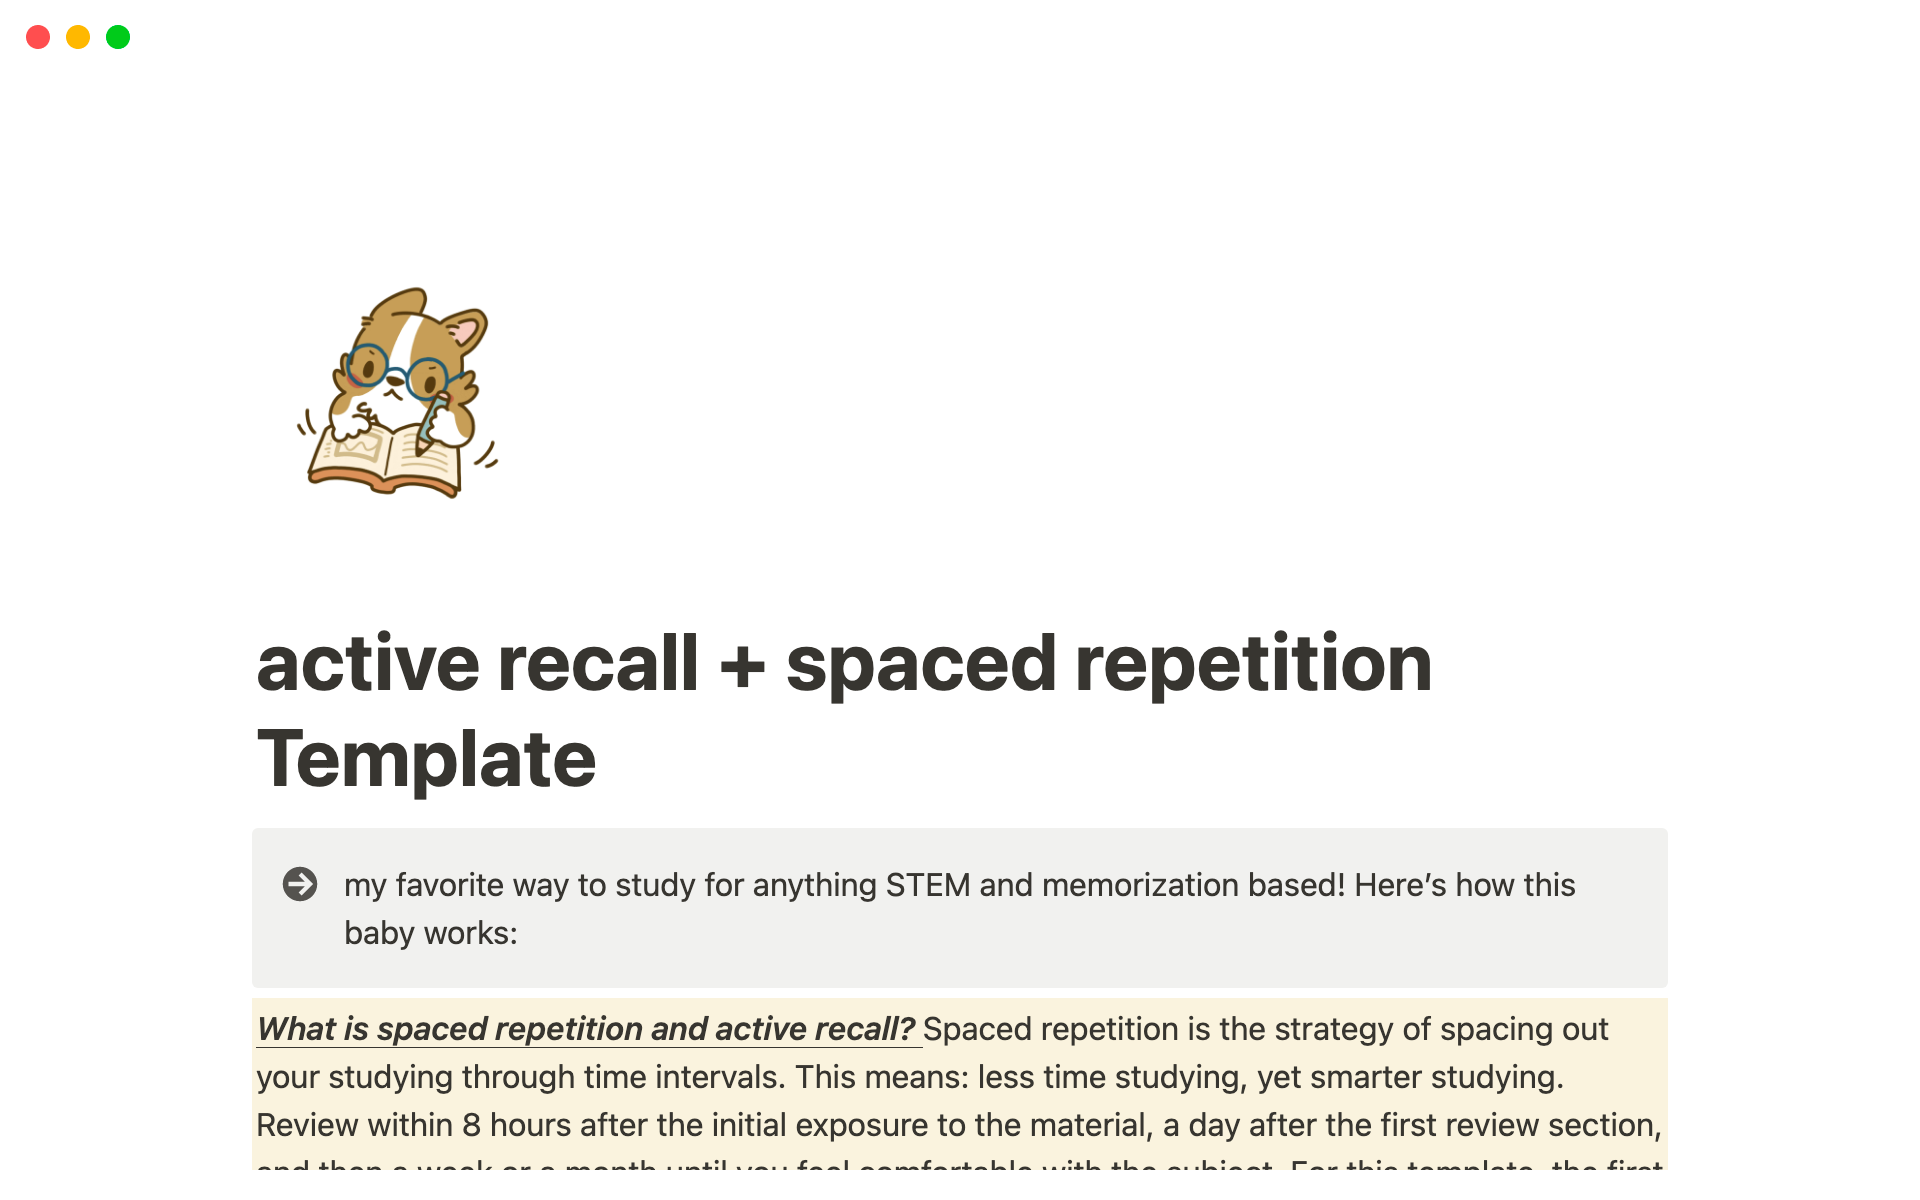 Vista previa de plantilla para Spaced repetition & active recall study template